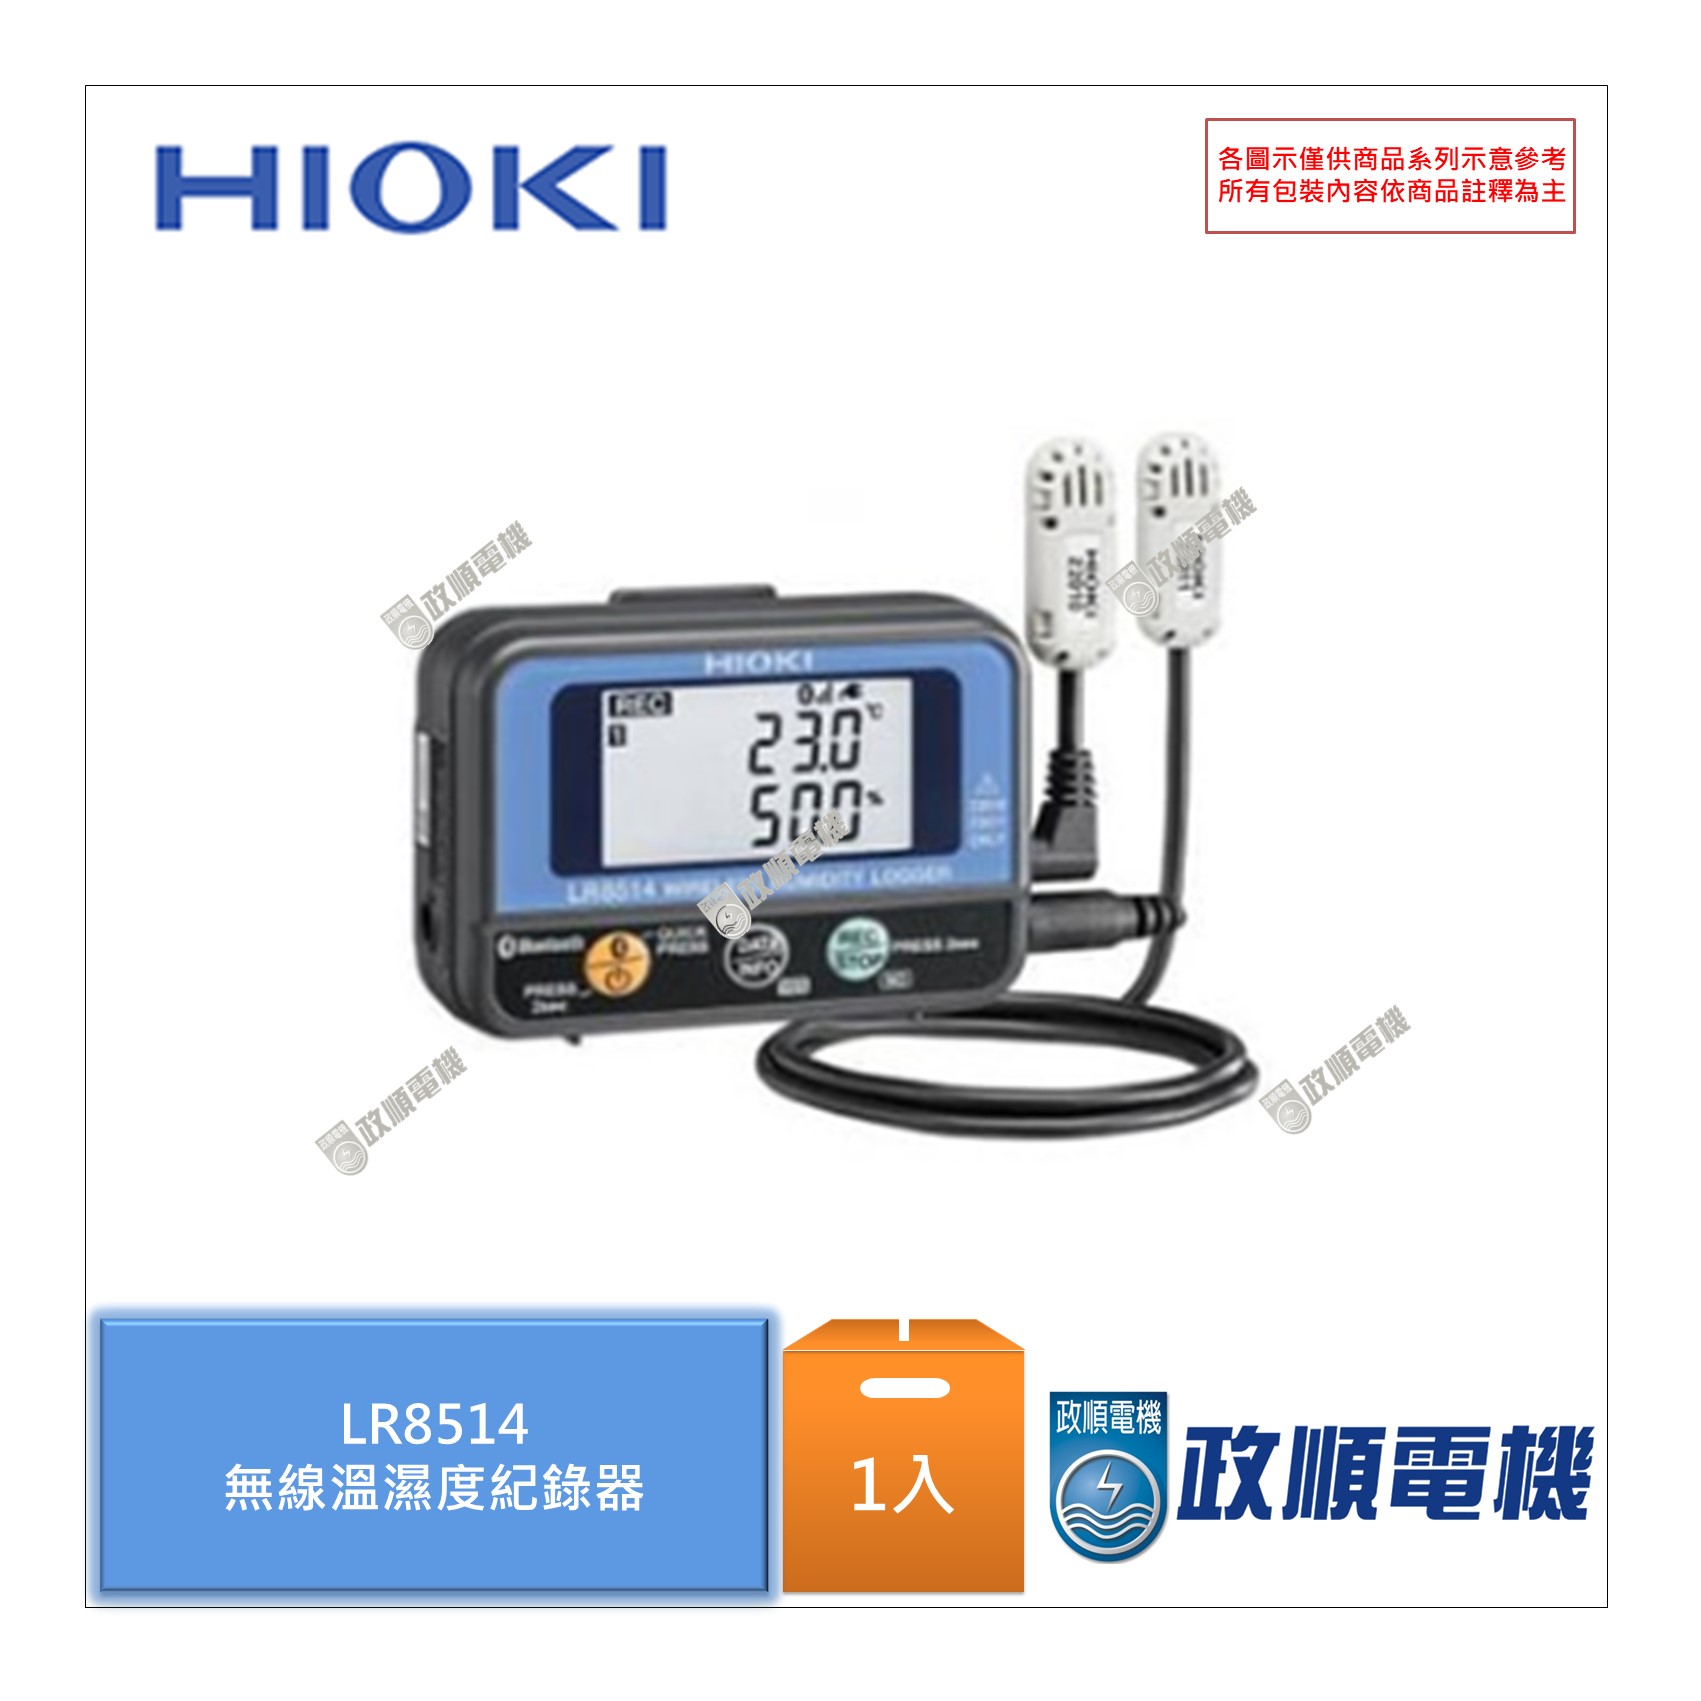 セール＆特集＞ HIOKI HIOKIワイヤレス温湿度ロガーLR8514 LR8514 生活用品 生活雑貨 介護 洗面 浴用品 温度計 湿度計 